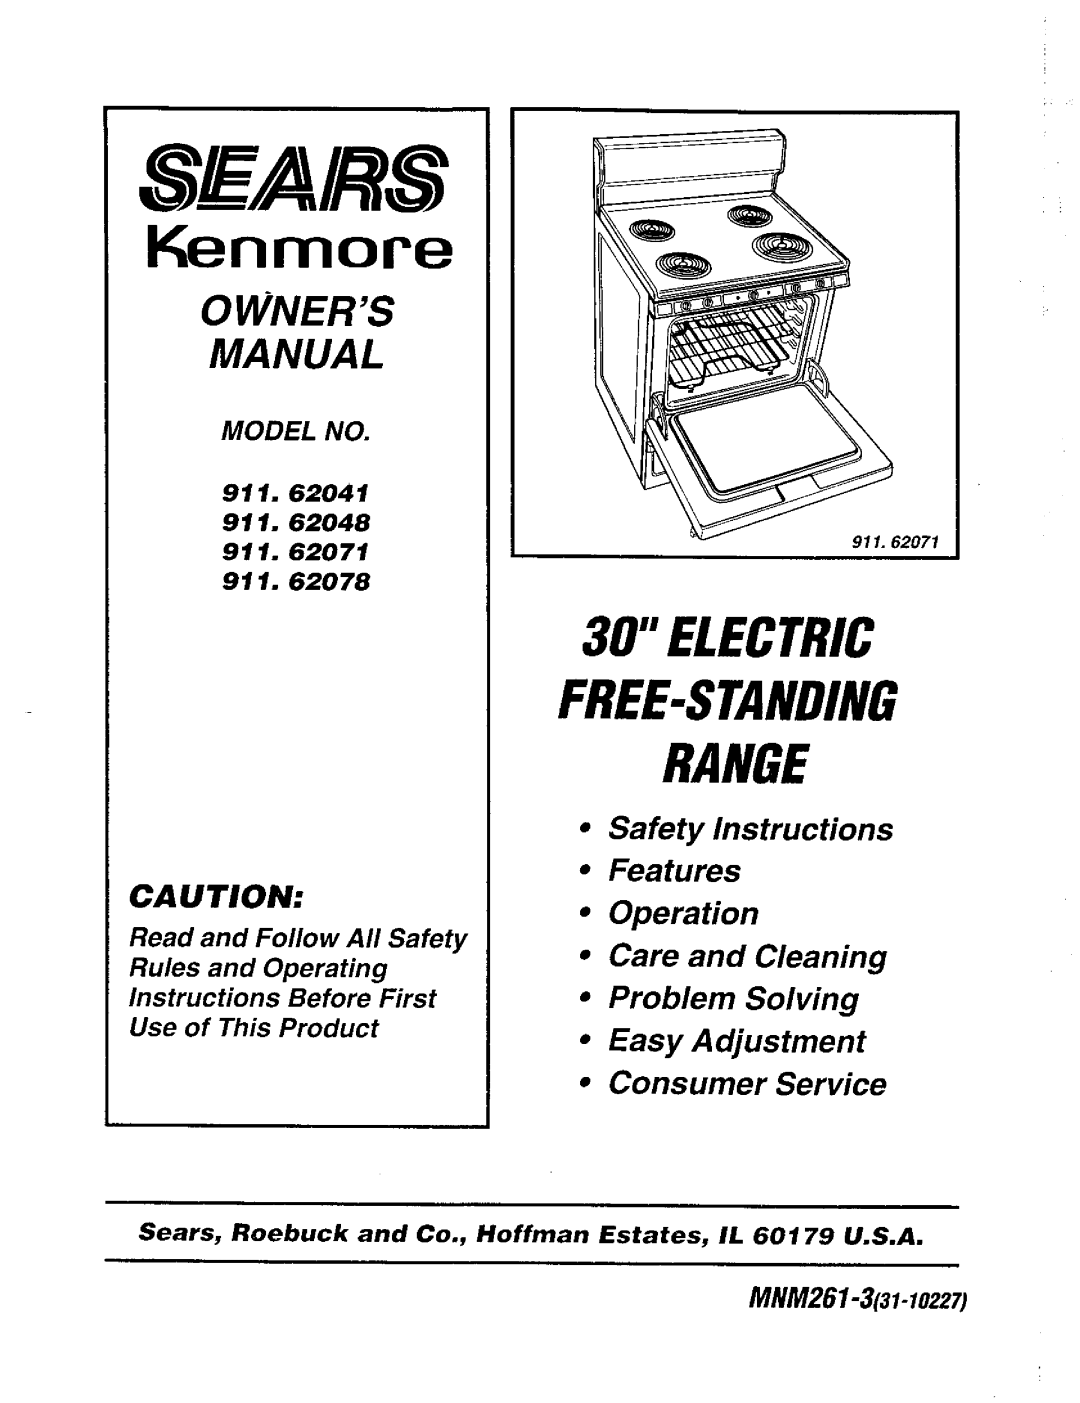 Sears 911. 62071 owner manual Owners, Ca U Tion, 911.62041, 911.62078, Sfars, Kenmore, Electric Free-Standingrange, Manual 